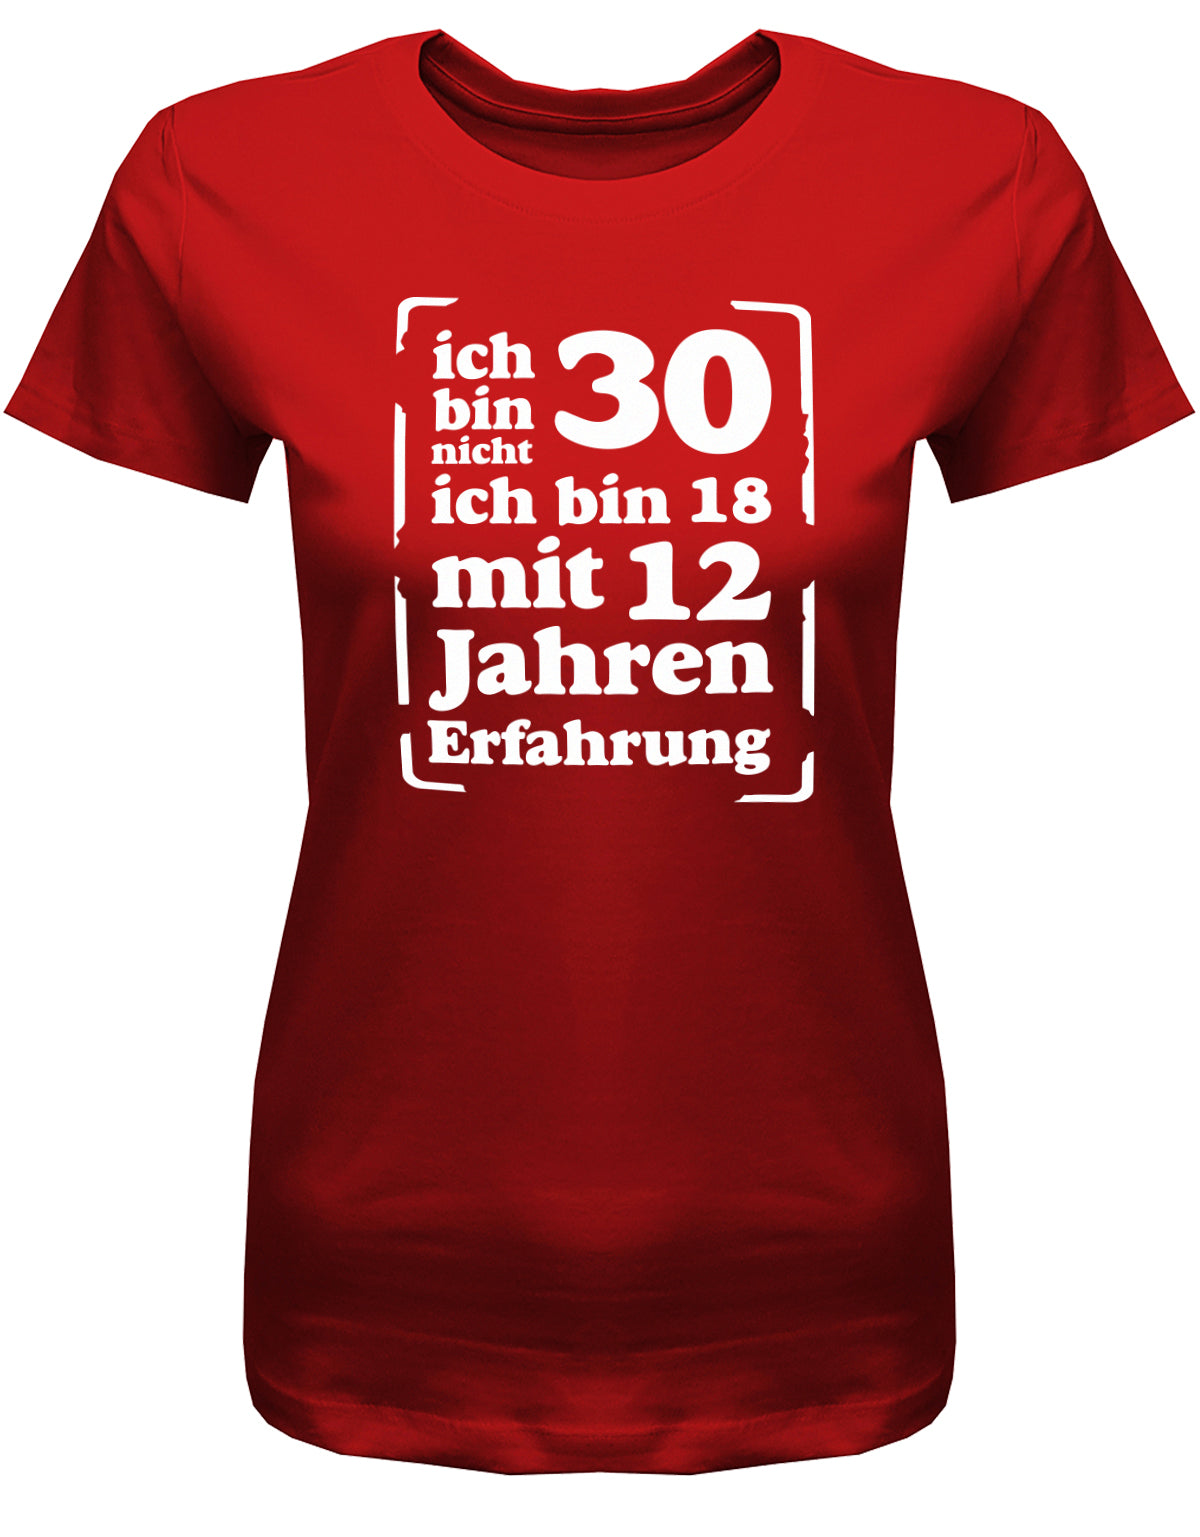 Lustiges T-Shirt zum 30. Geburtstag für die Frau Bedruckt mit: Ich bin nicht 30, ich 18, mit 32 Jahren Erfahrung. Geschenk zum 30 geburtstag Frau ✓ 1993 geburtstag Frau ✓ 30 Geburtstag tshirt ✓ shirt geburtstag 30 Rot